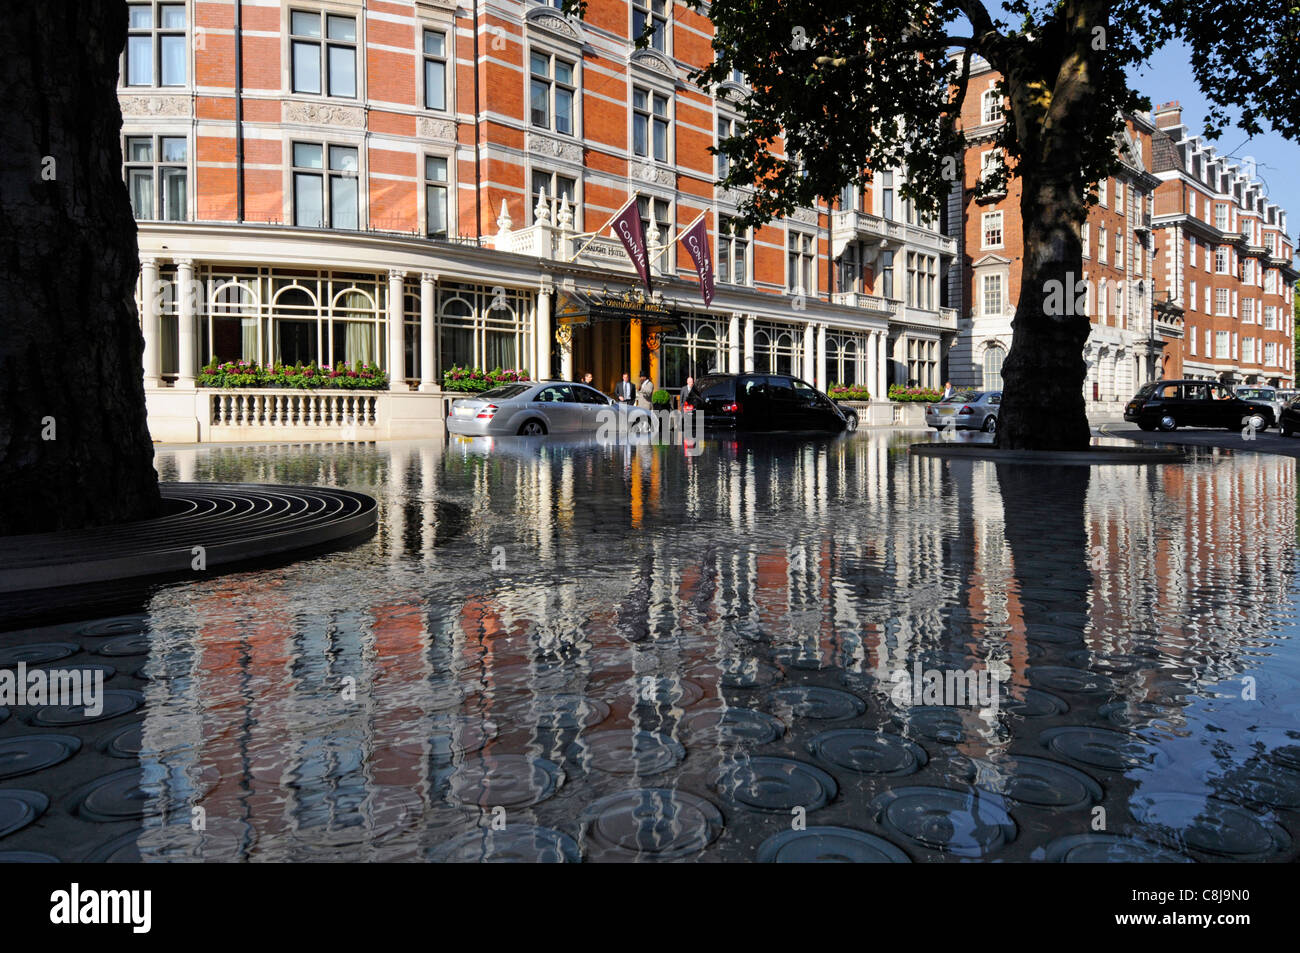 Les arbres en fonction de l'eau étang ombragé soulevées par Tadao Ando la réflexion avant de luxury hotel Connaught, bâtiments extérieurs et voitures Mayfair Londres West End UK Banque D'Images